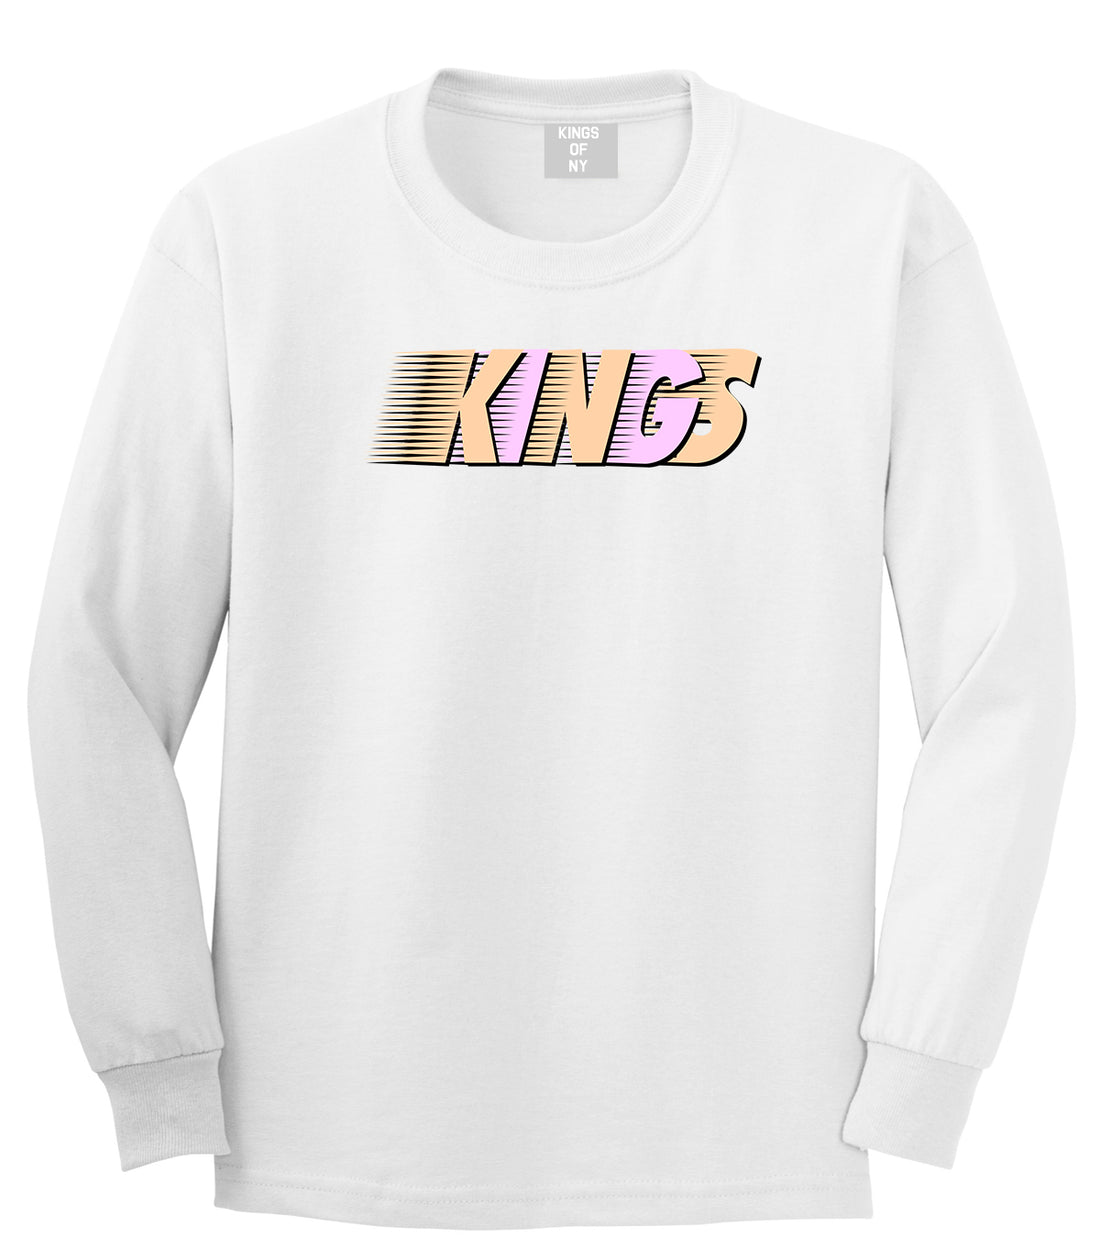 KINGS Easter Long Sleeve T-Shirt in White